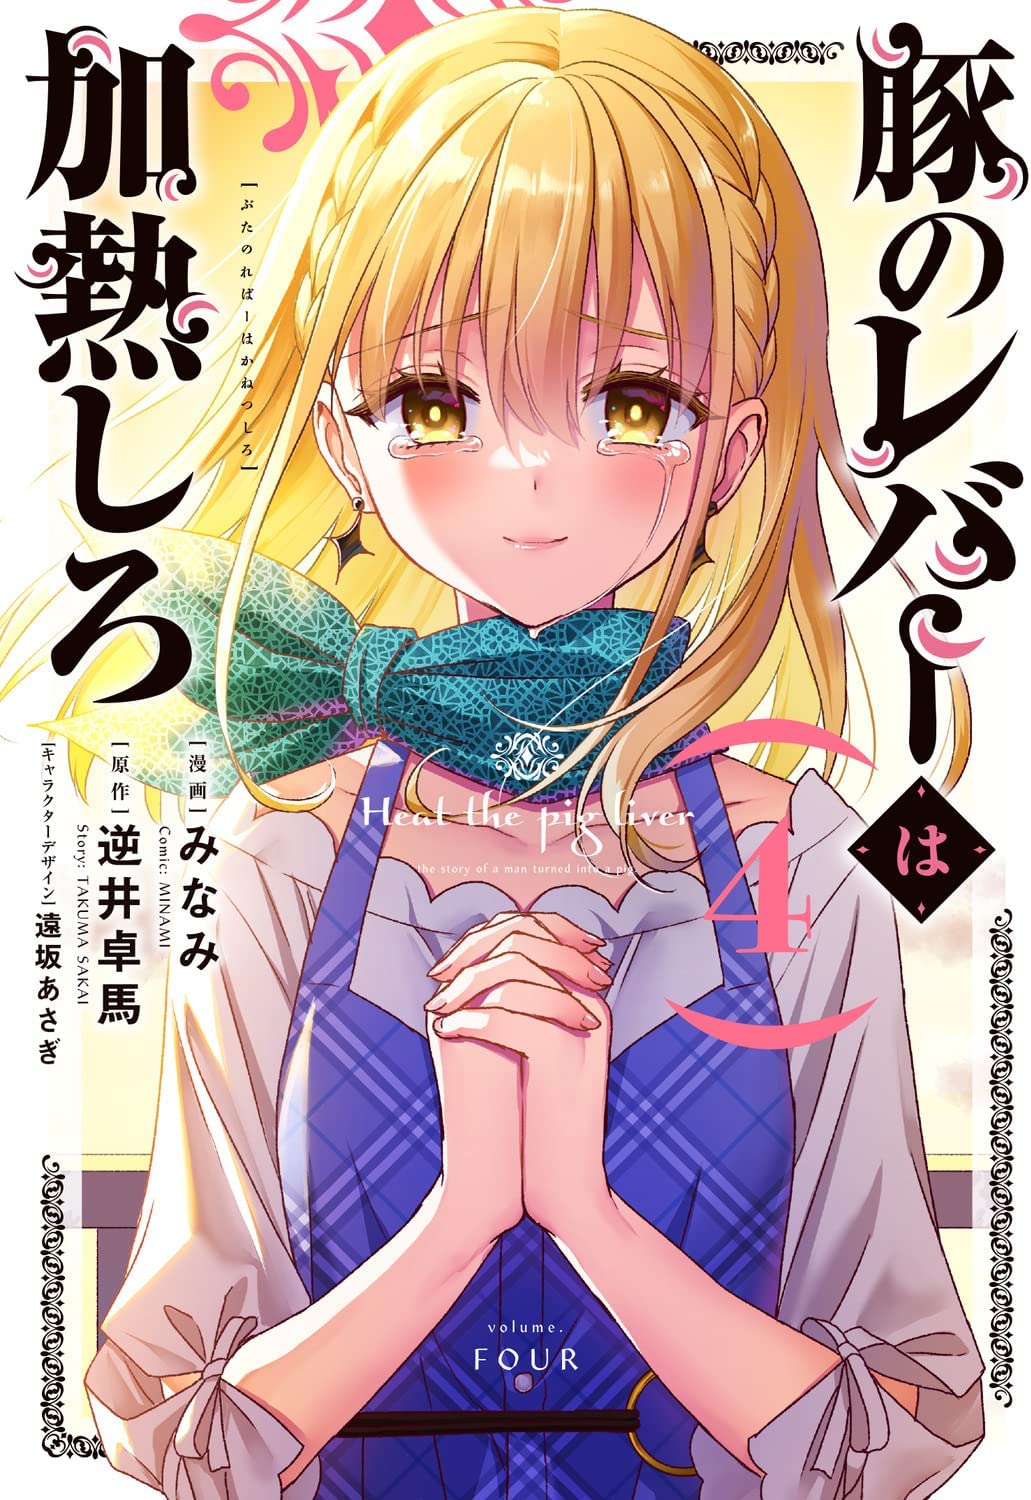 El manga de Buta no Liver wa Kanetsu Shiro revelo la portada de su volumen #4